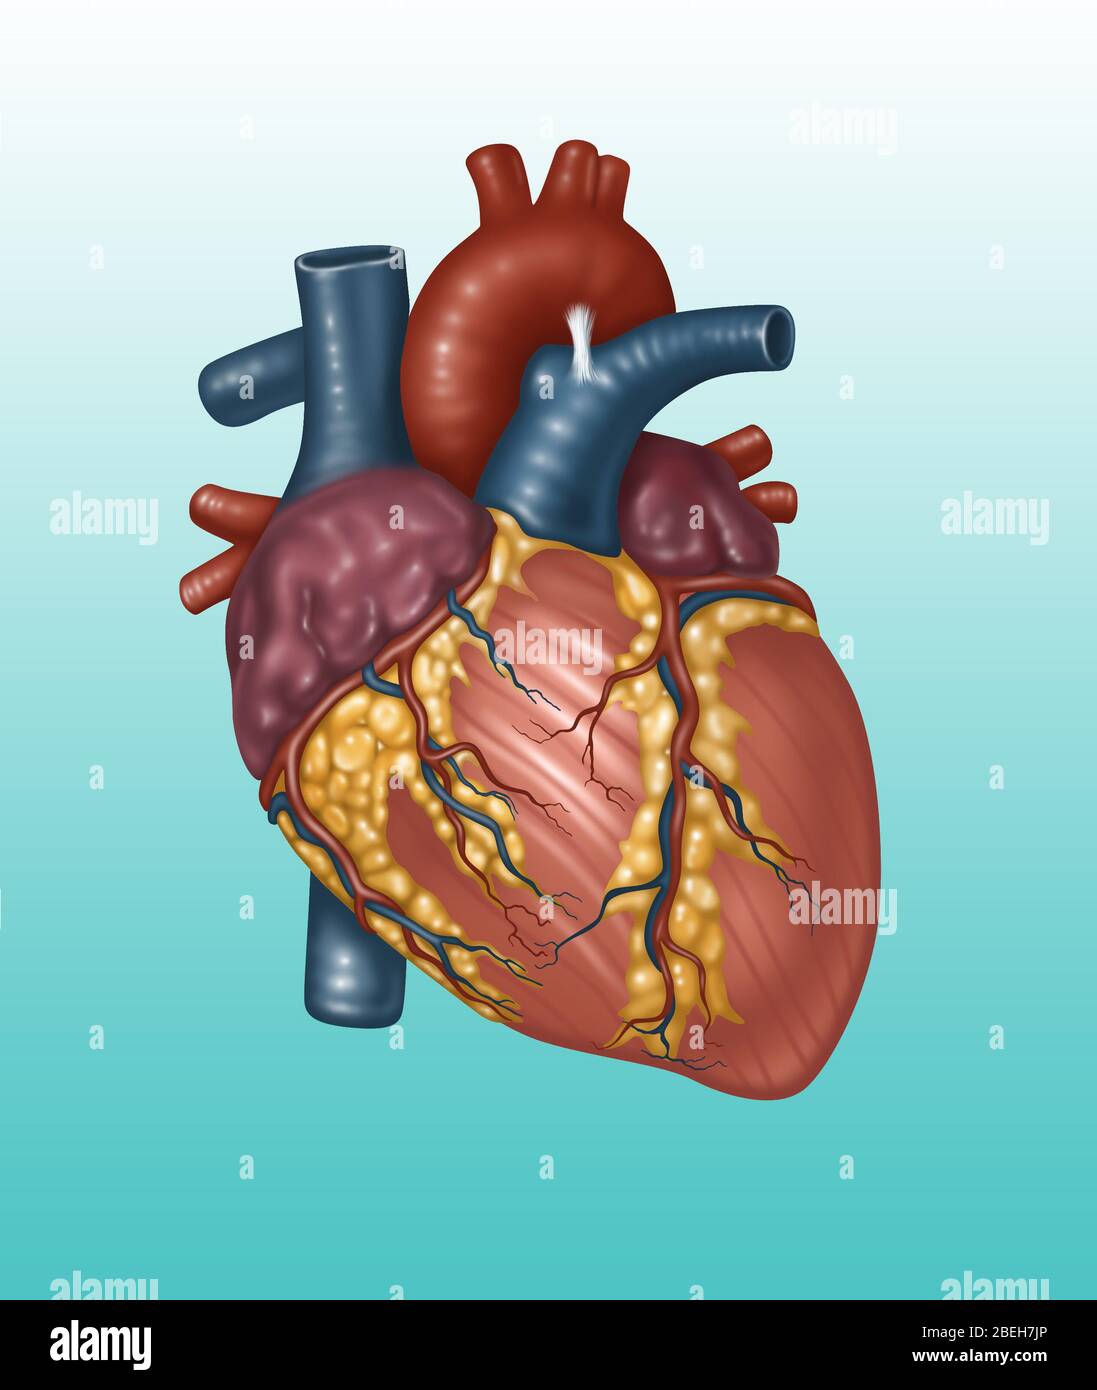 Anatomie cardiaque saine, illustration Banque D'Images